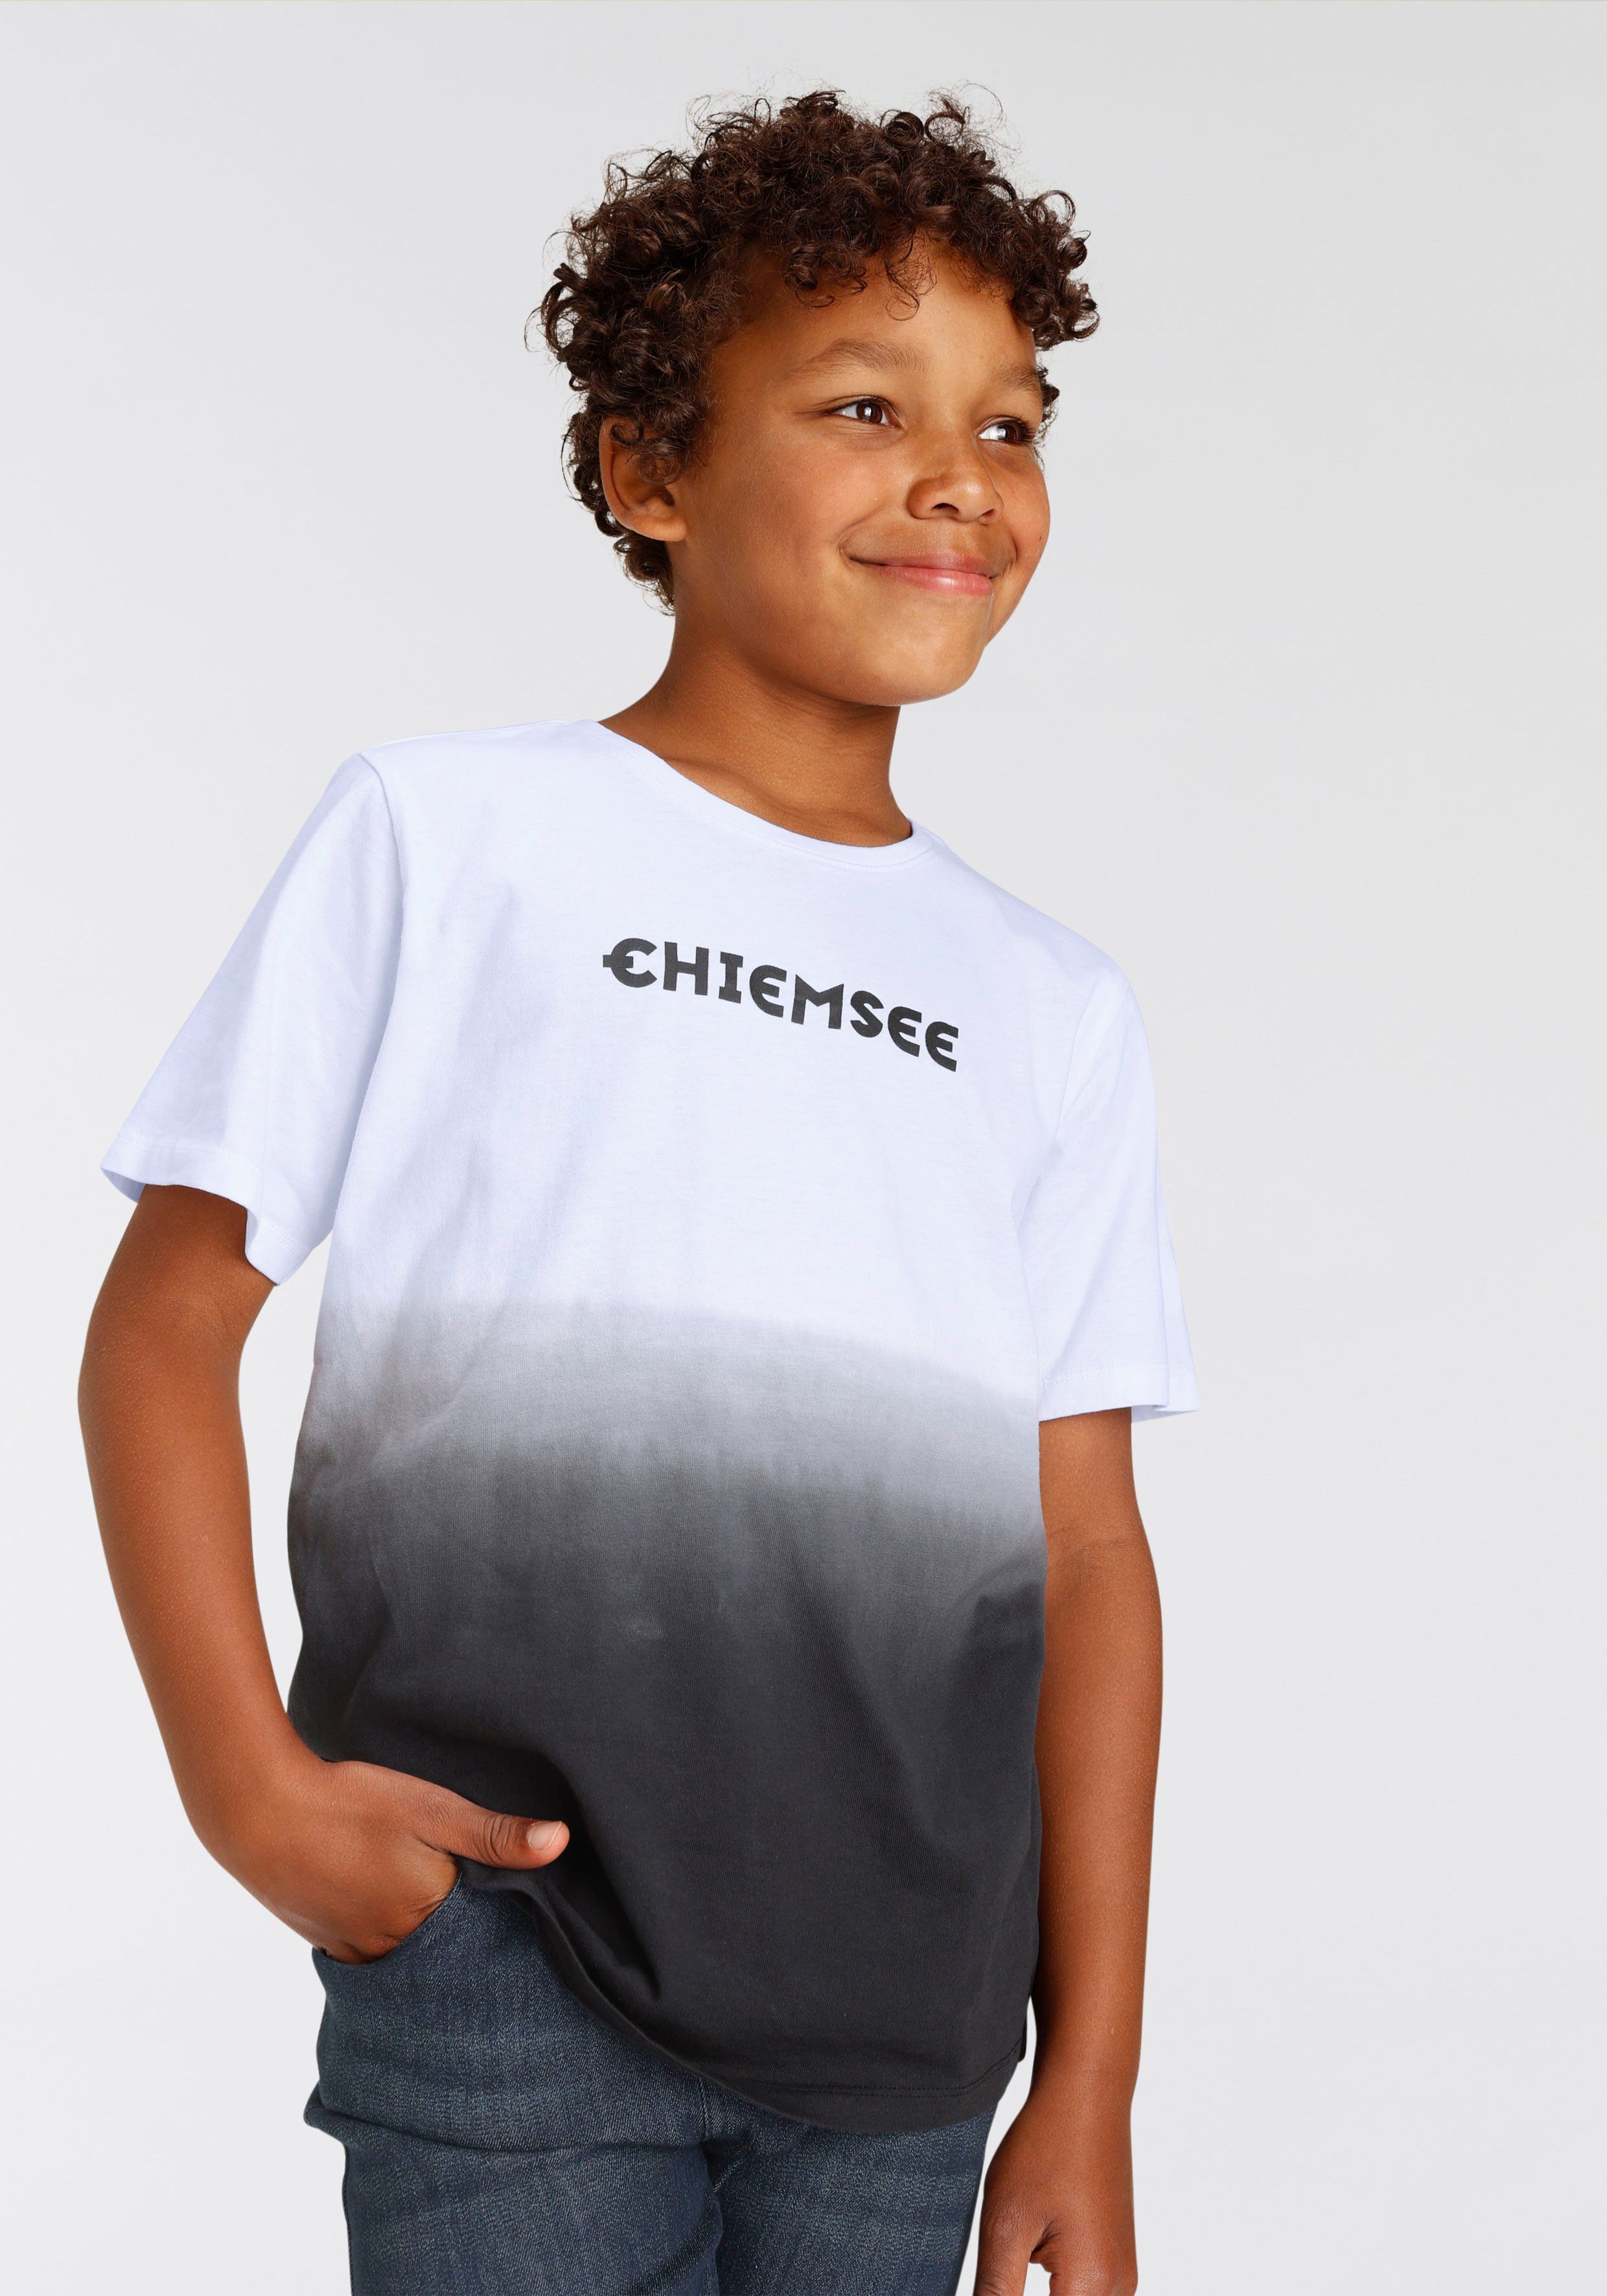 Neueste Ware eingetroffen Chiemsee T-Shirt Modischer Farbverlauf